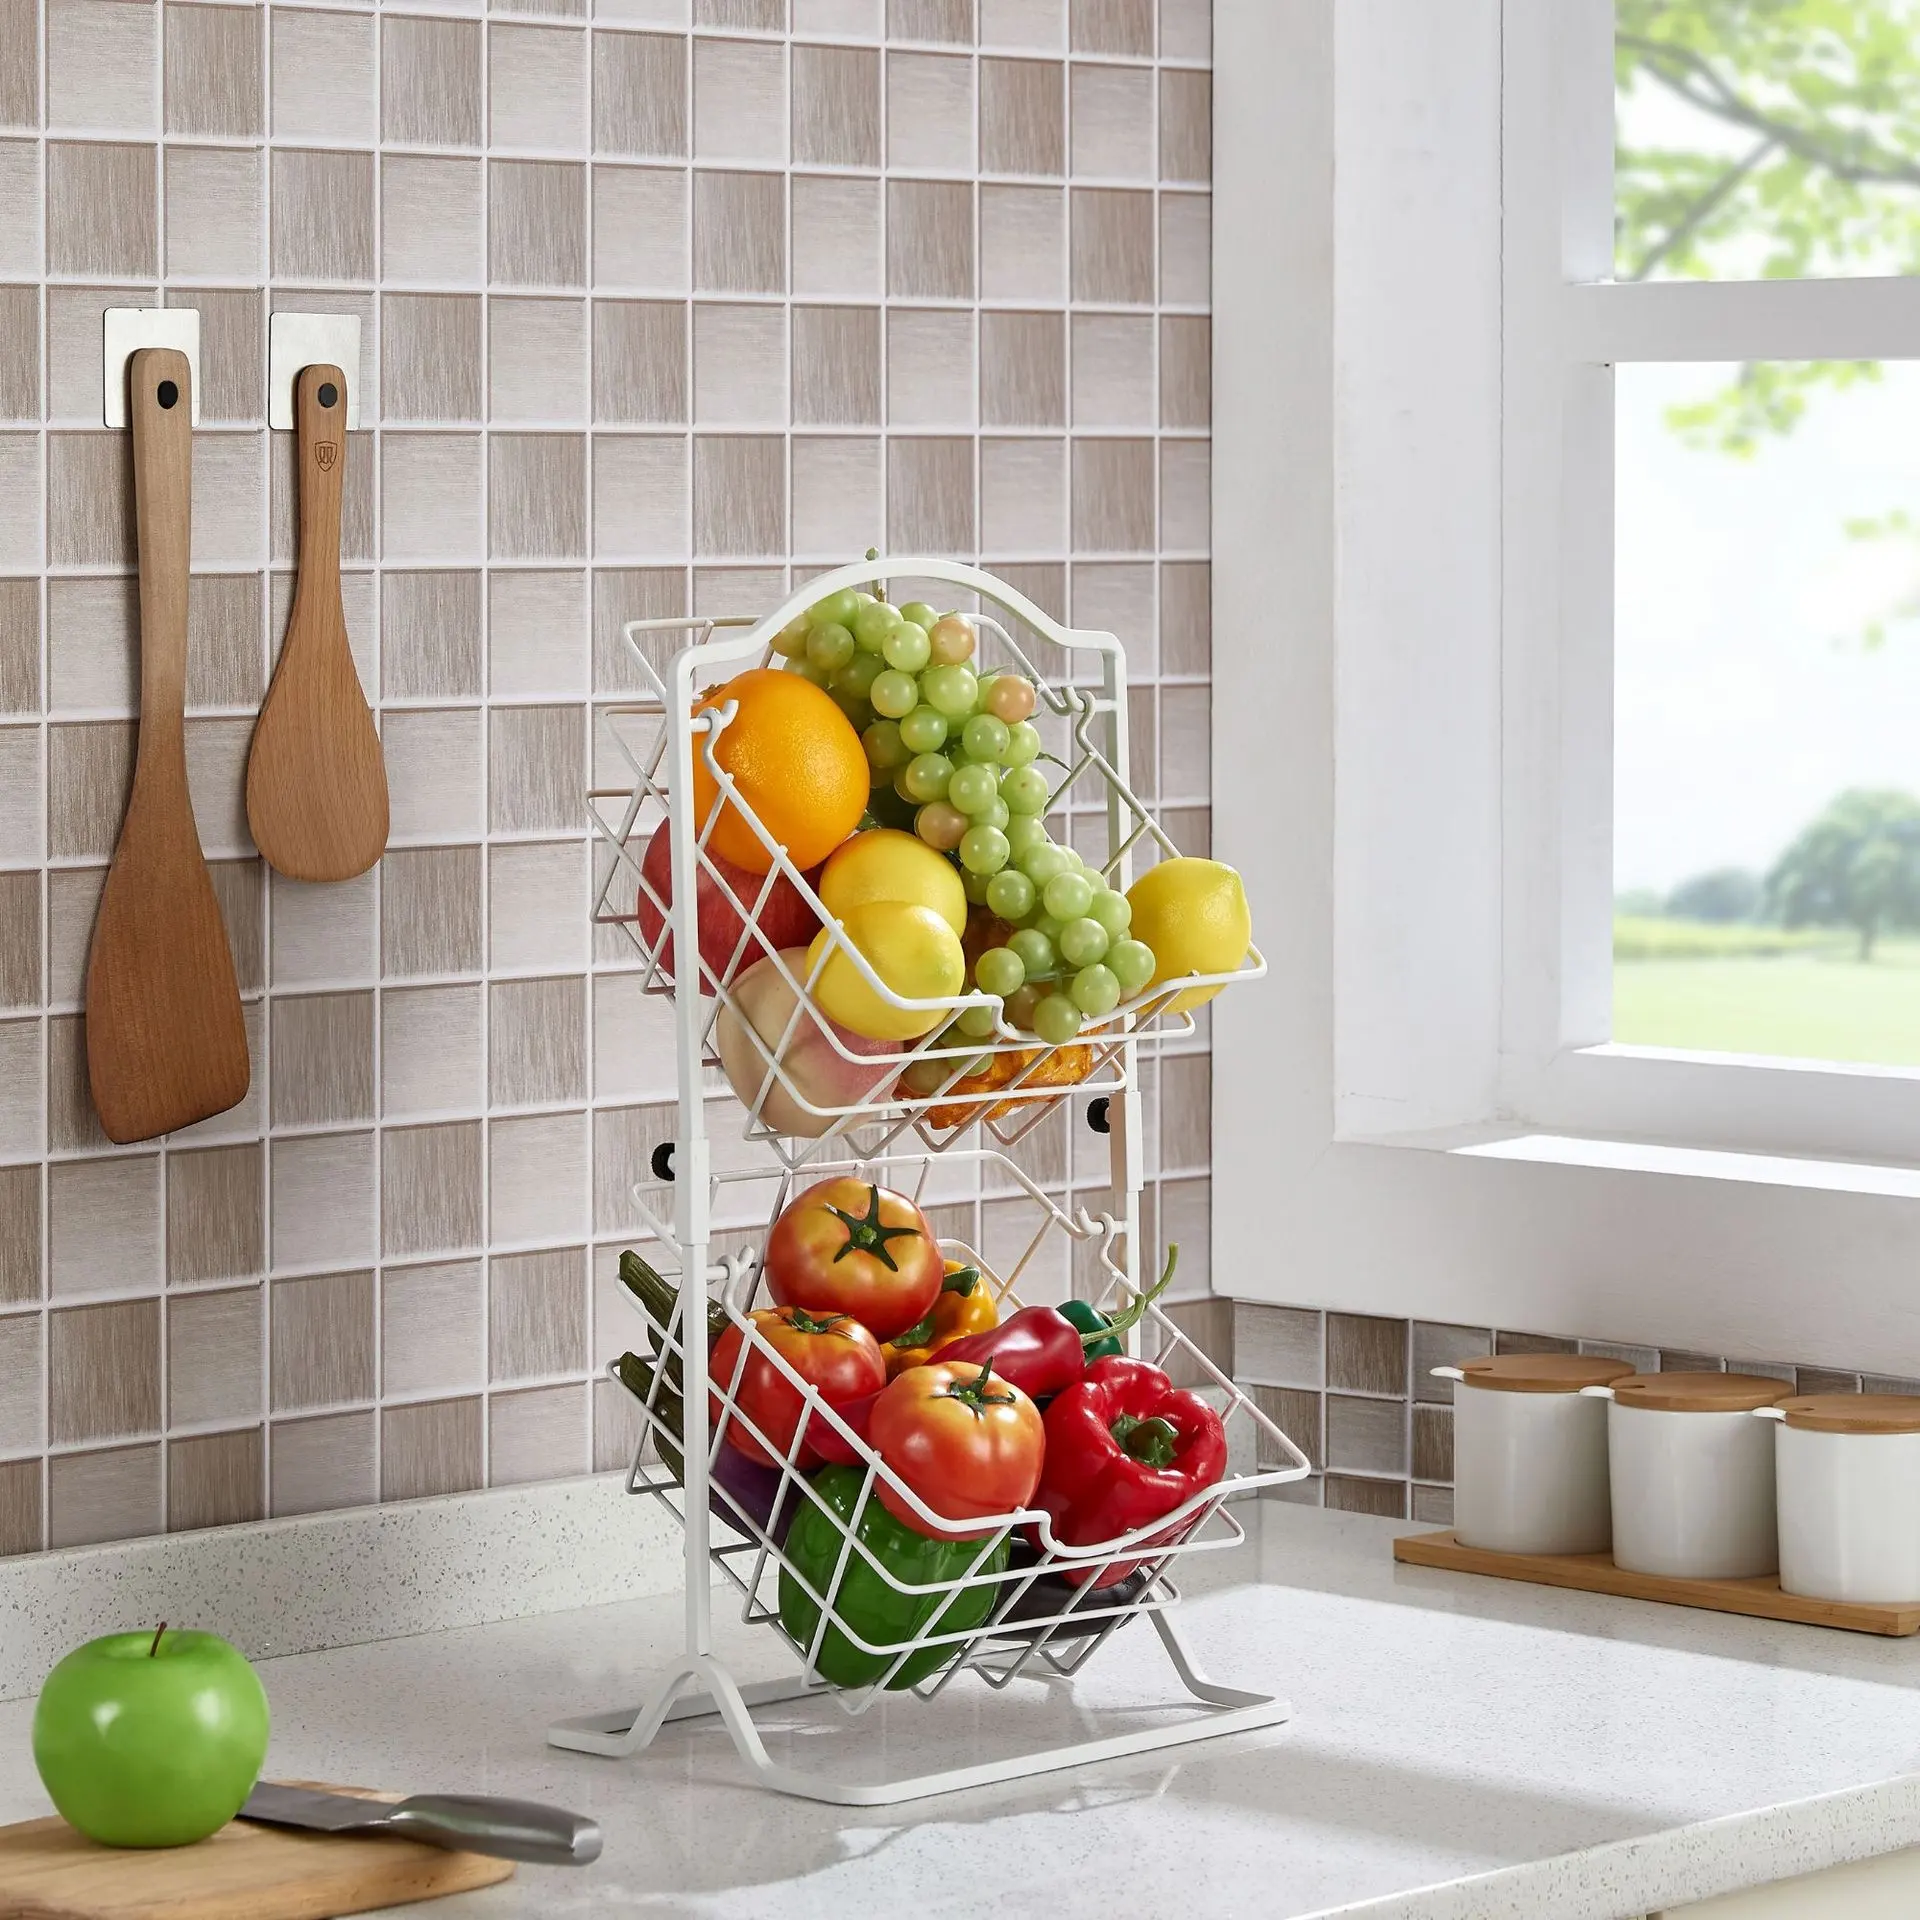 Jx-cesta de armazenamento de frutas e vegetais, cesta rotativa de duas camadas destacável para uso doméstico, lanches e armários